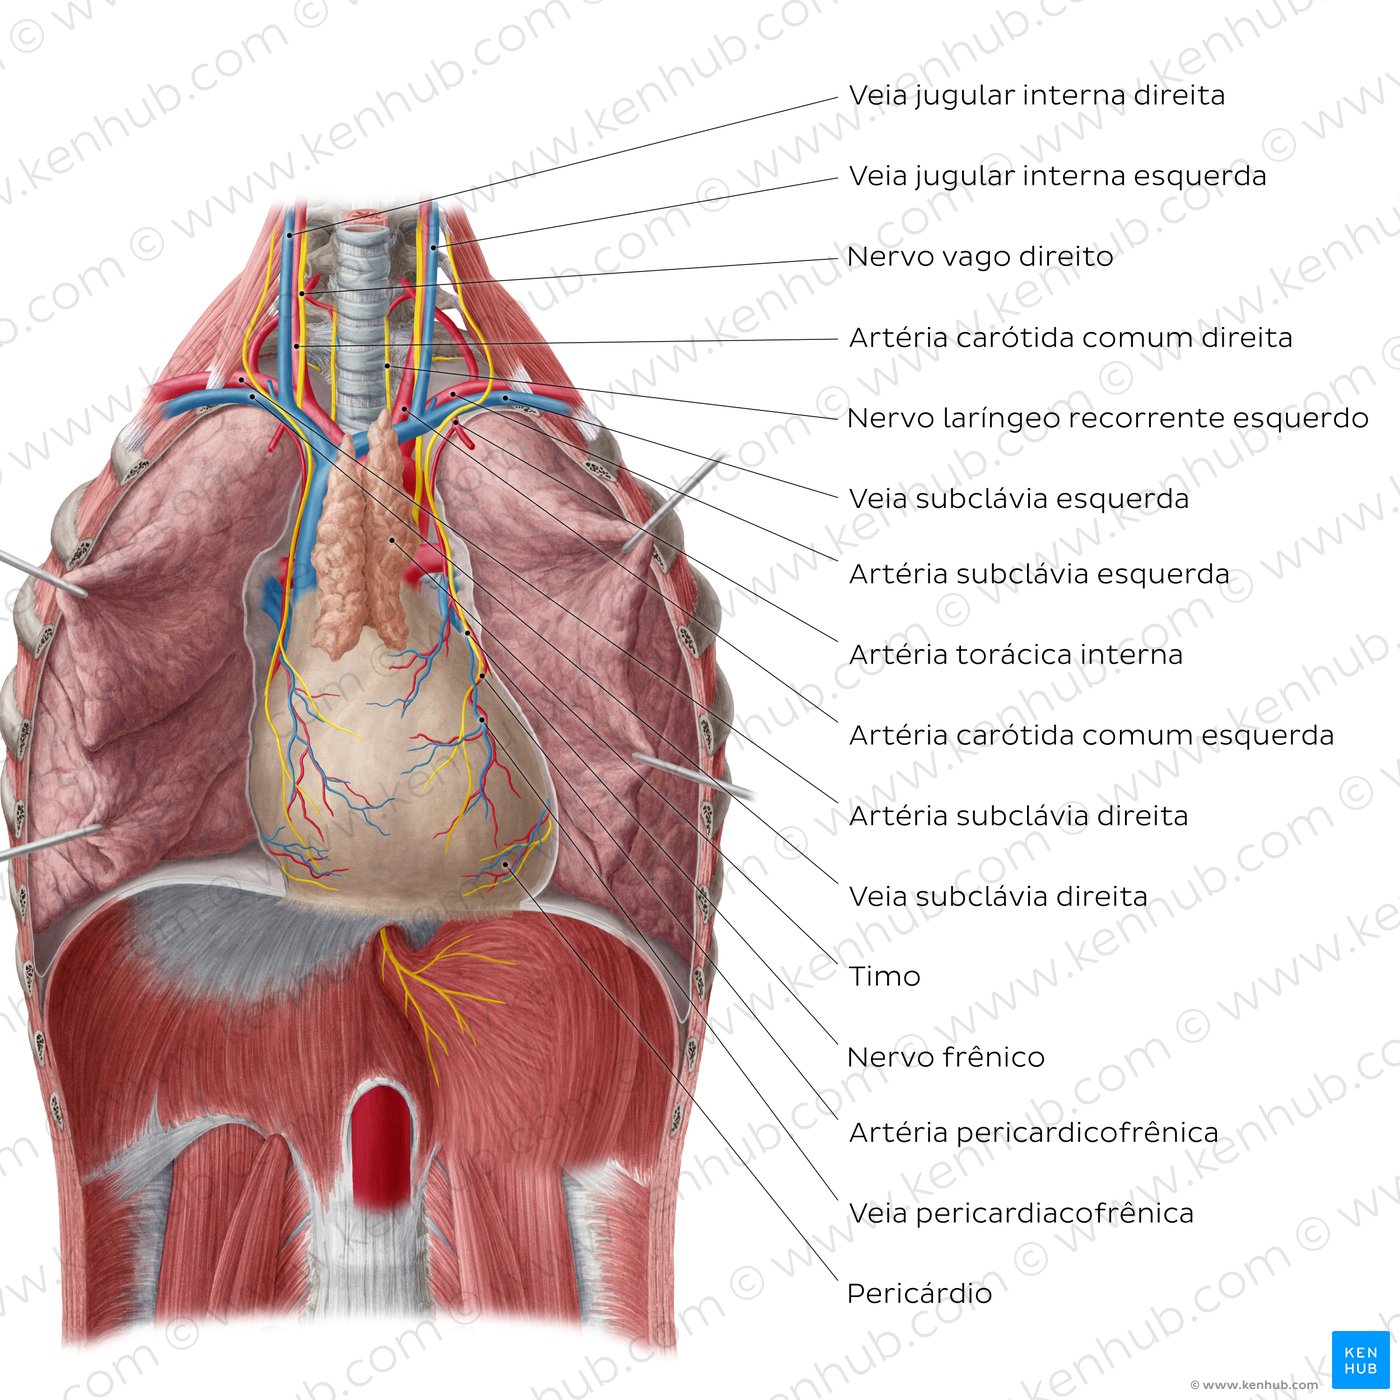 Visão geral do coração in situ (vista ventral)